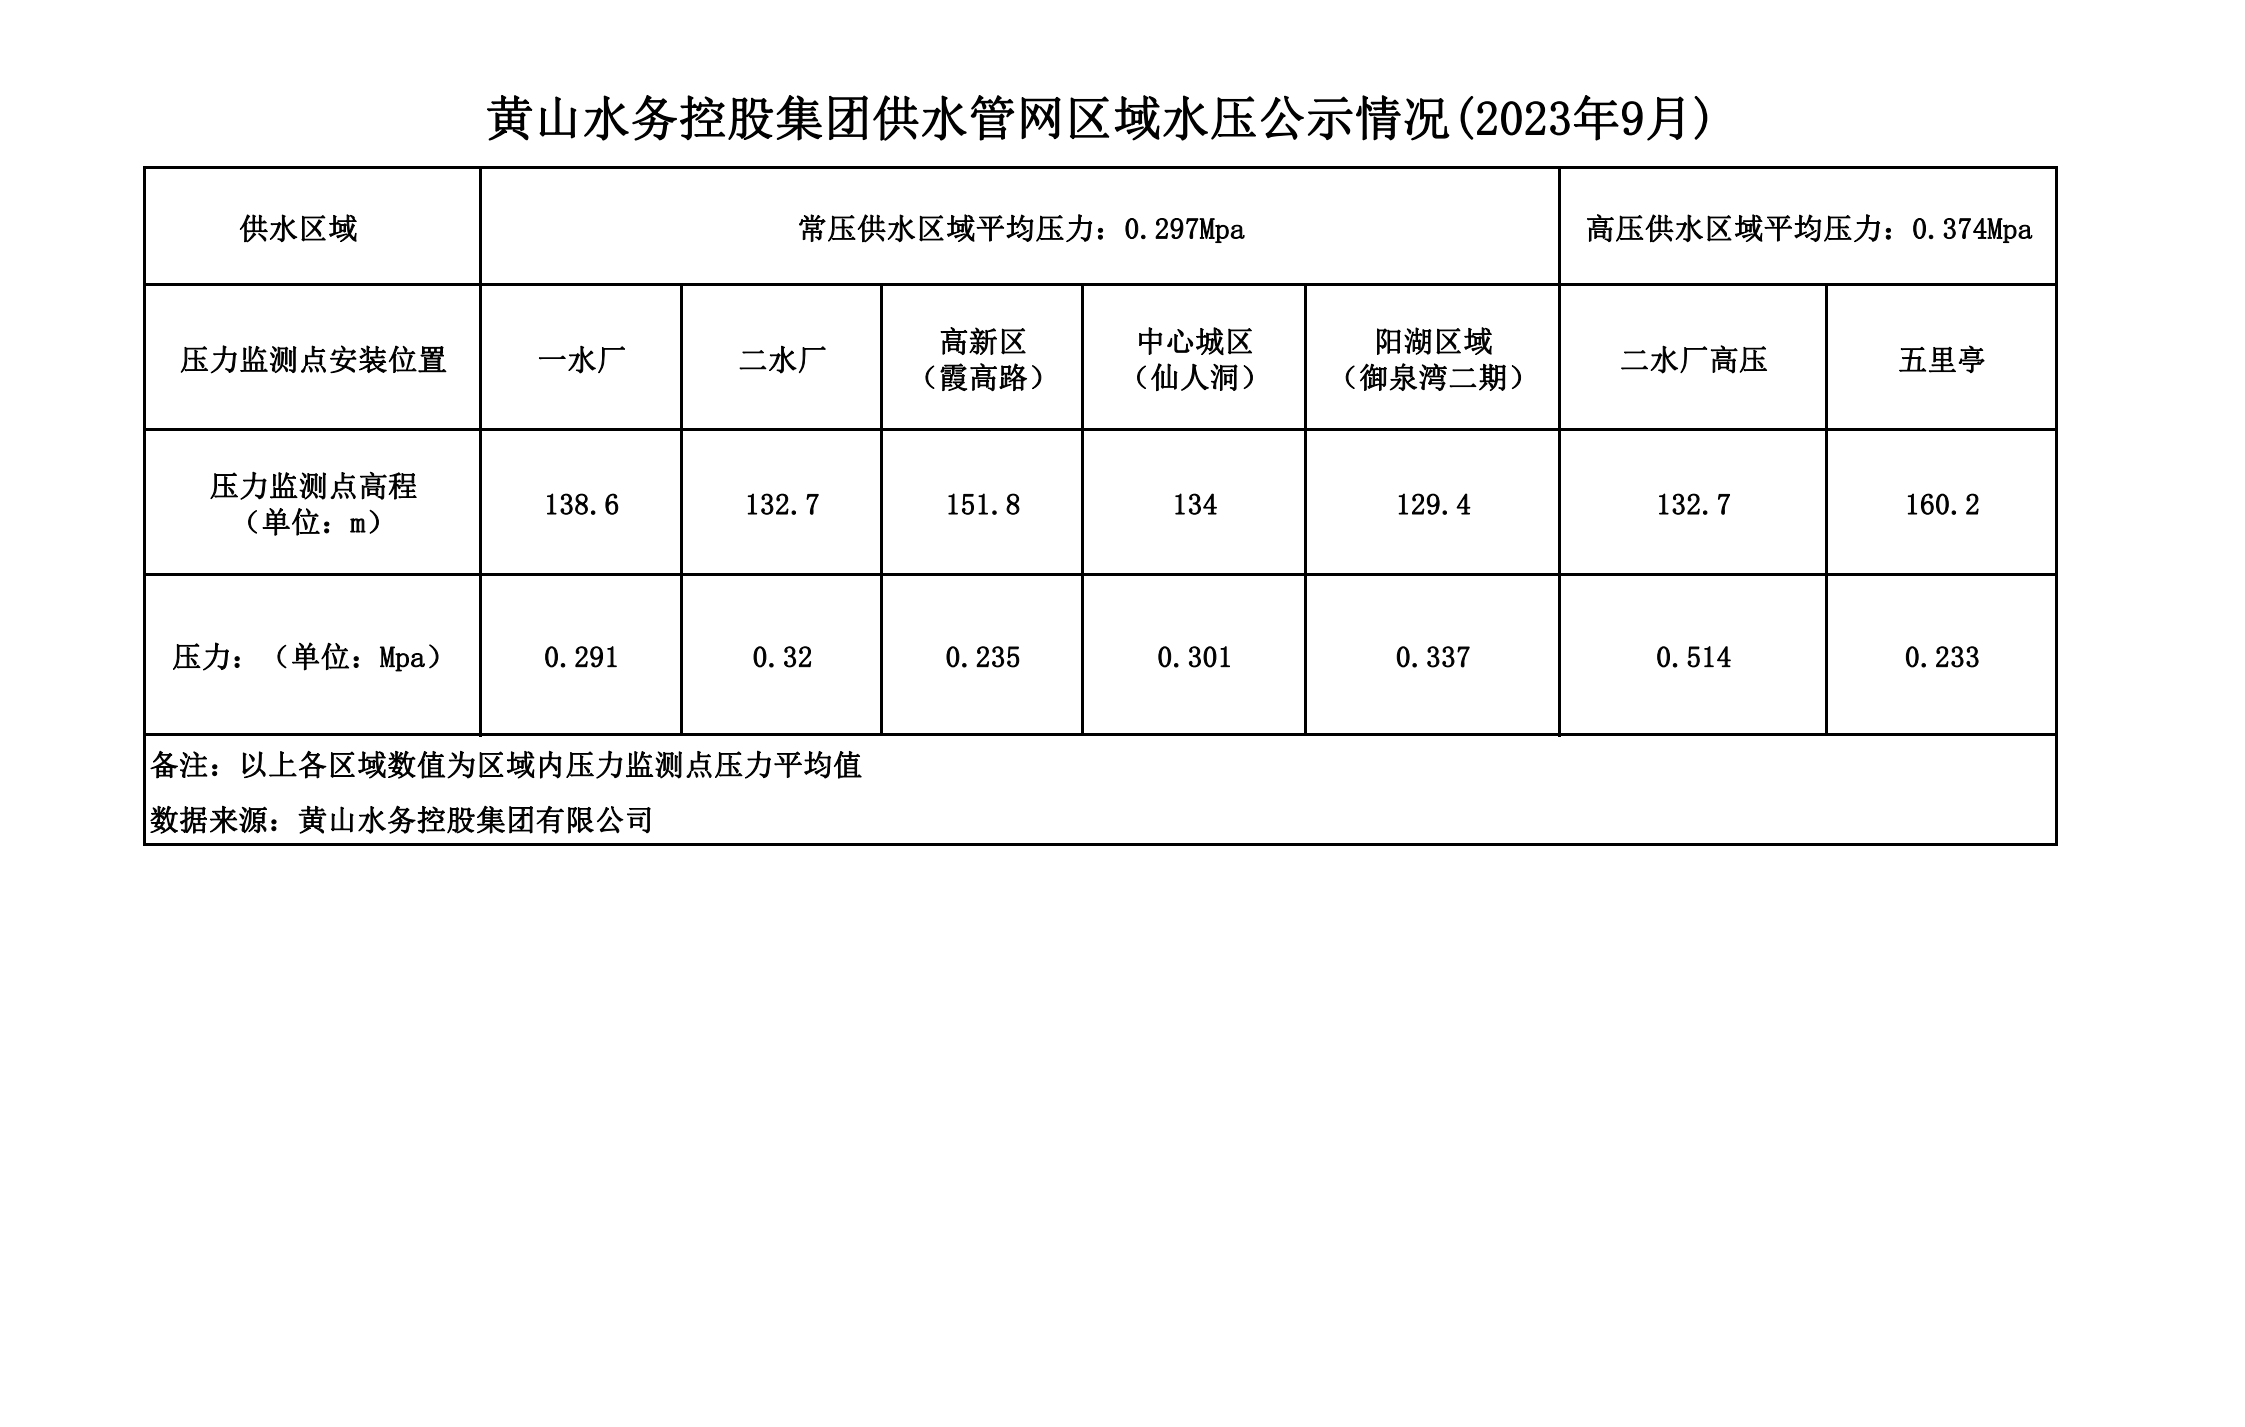 黄山水务控股集团供水管网区域水压公示情况(2023年9月)_00.png